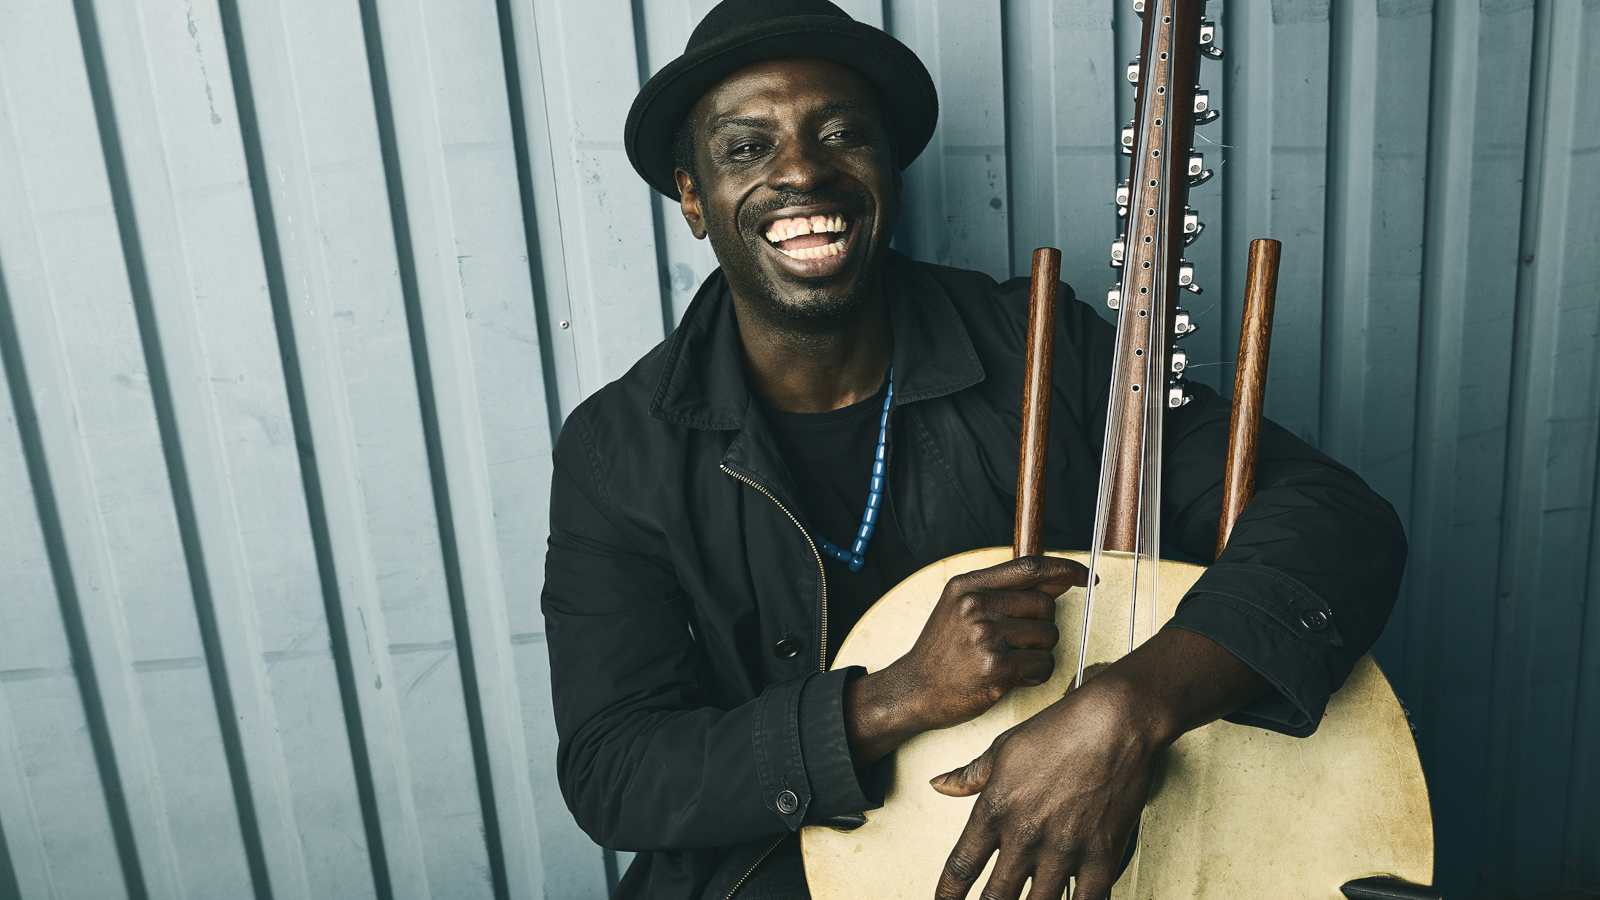 Gambiasta kotoisin oleva muusikko Dawda Jobarteh on asunut puolet elämästään Tanskassa. Hän sanoo musiikissaan olevan vaikutteita molemmista maista.